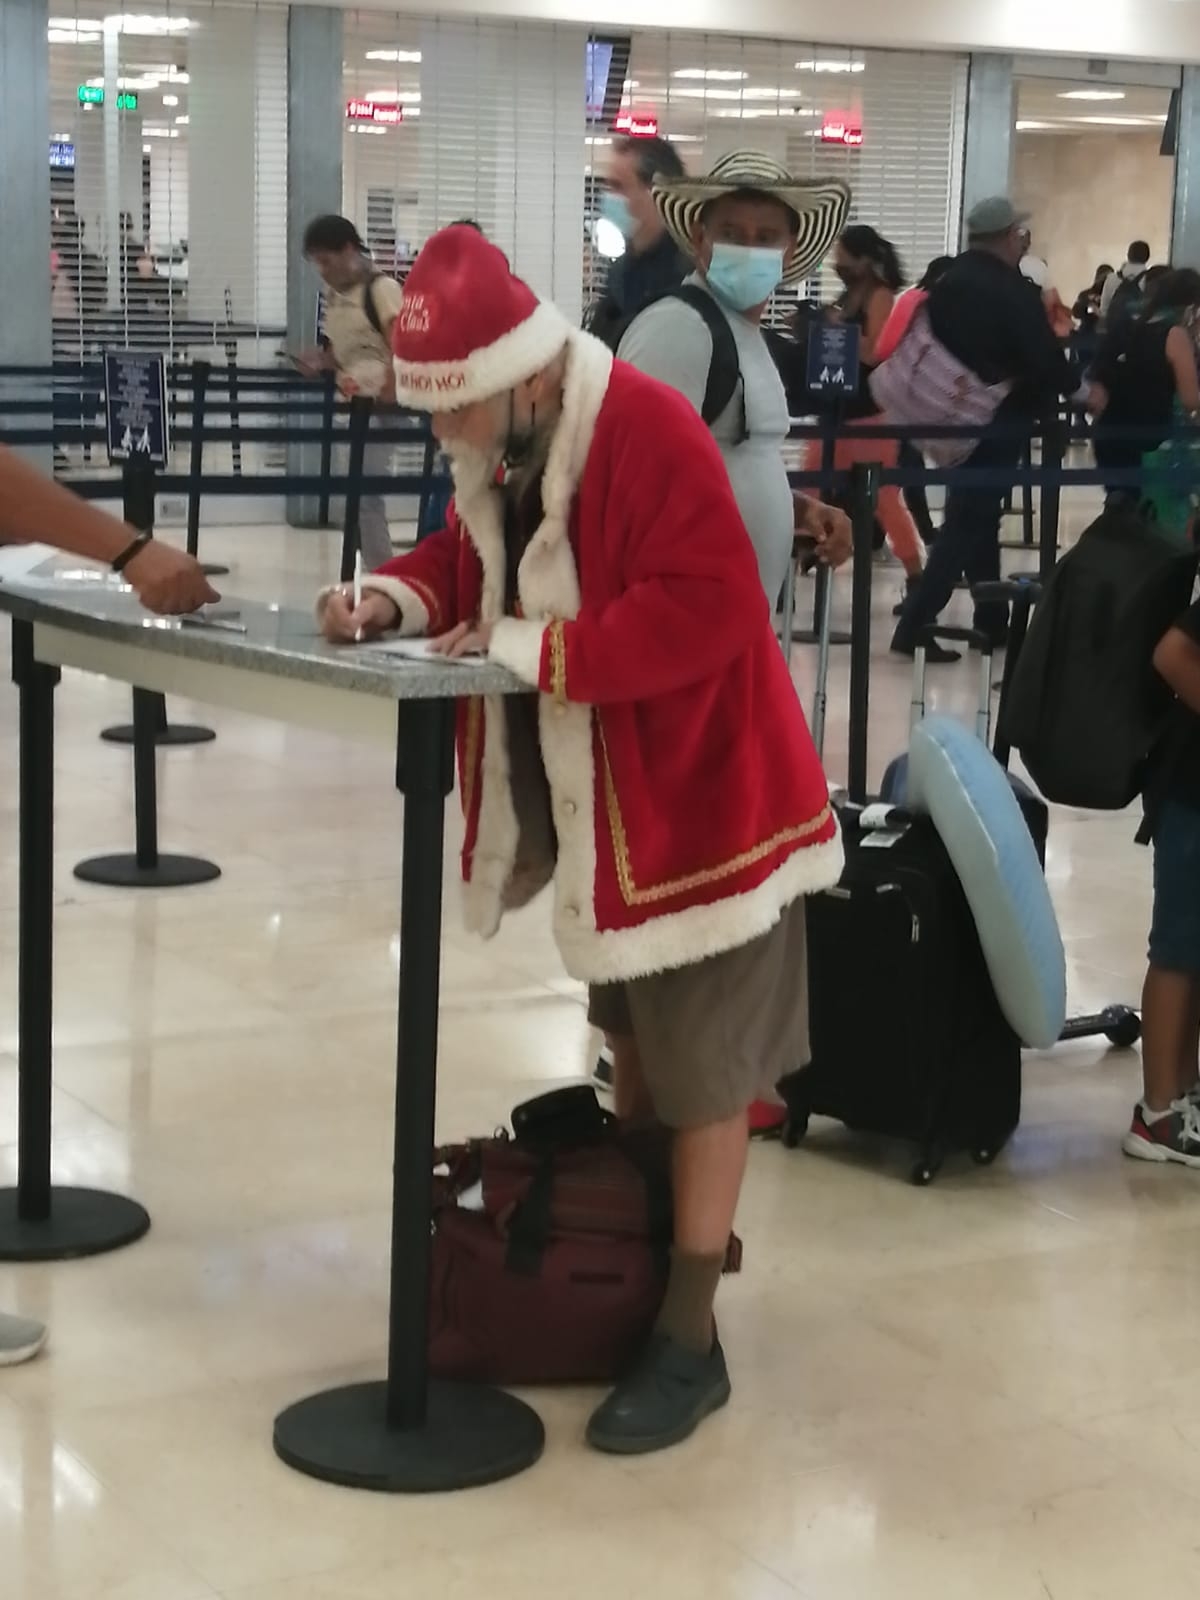 El viajero originario de Canadá realizó su registro para abordar su vuelo en Cancún, vestido de Santa Claus